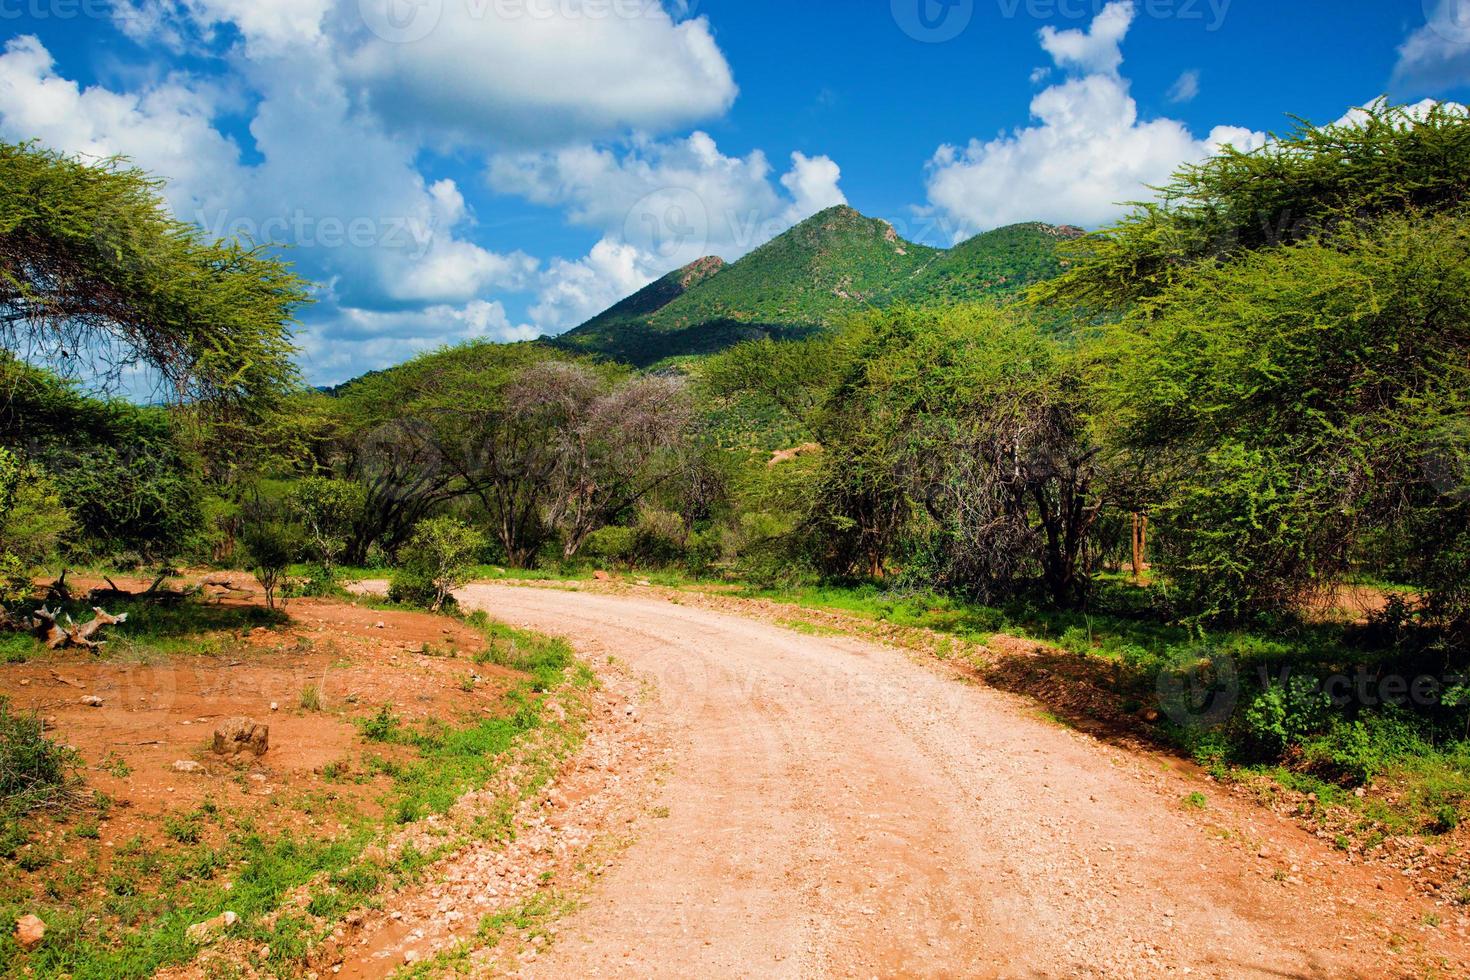 route de terre rouge et savane. tsavo ouest, kenya, afrique photo